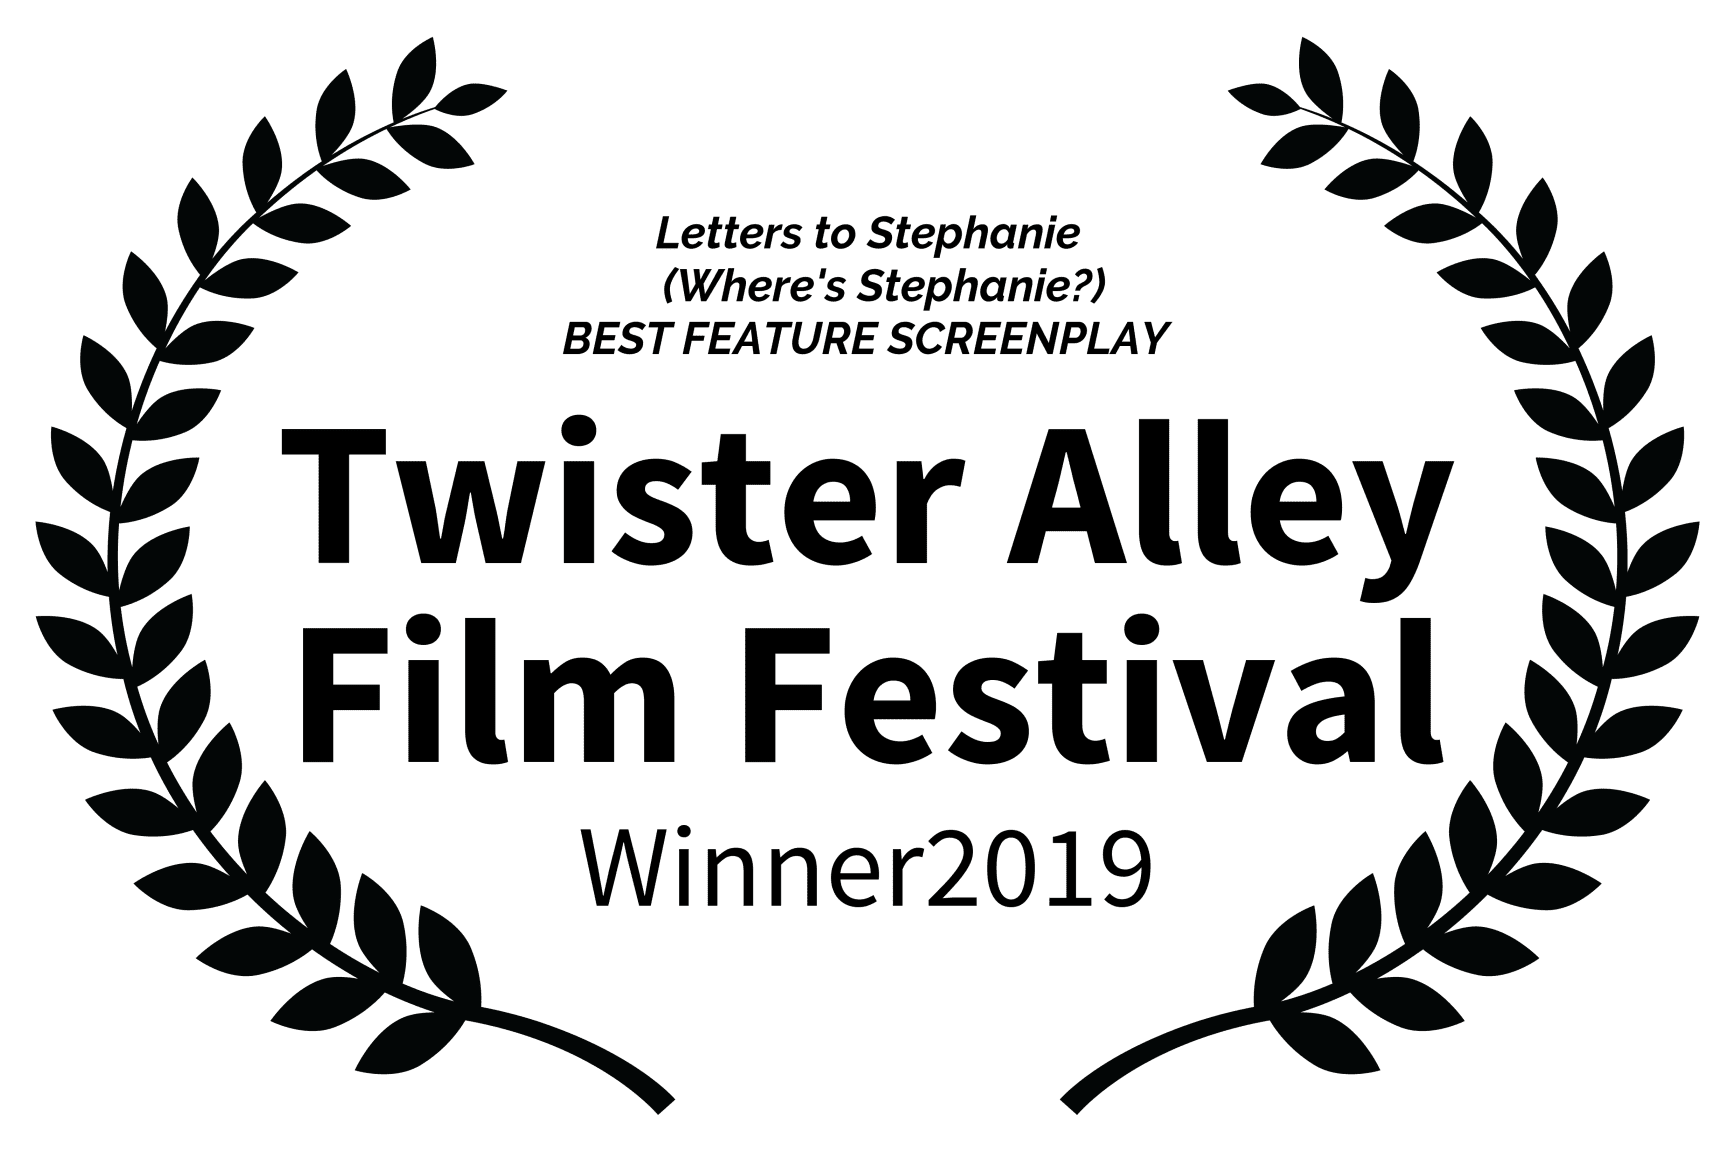 Best screenplay award of Twister Alley Film Festival Winner